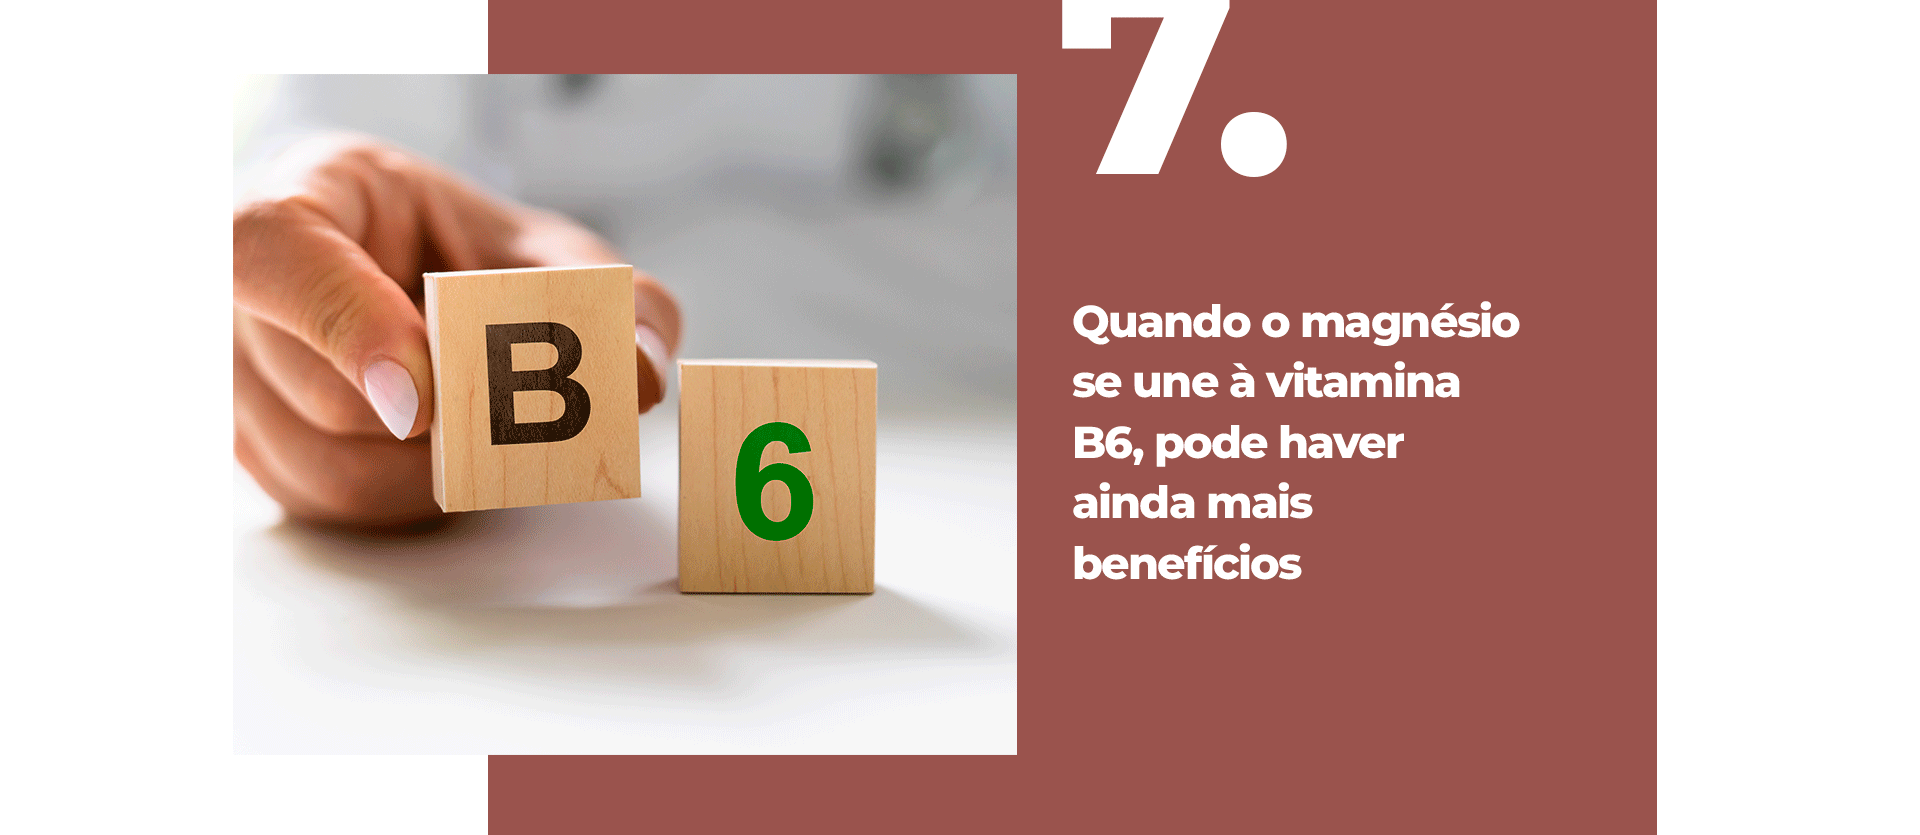 Quando o magnésio se une à vitamina B6, você pode ter ainda mais benefícios